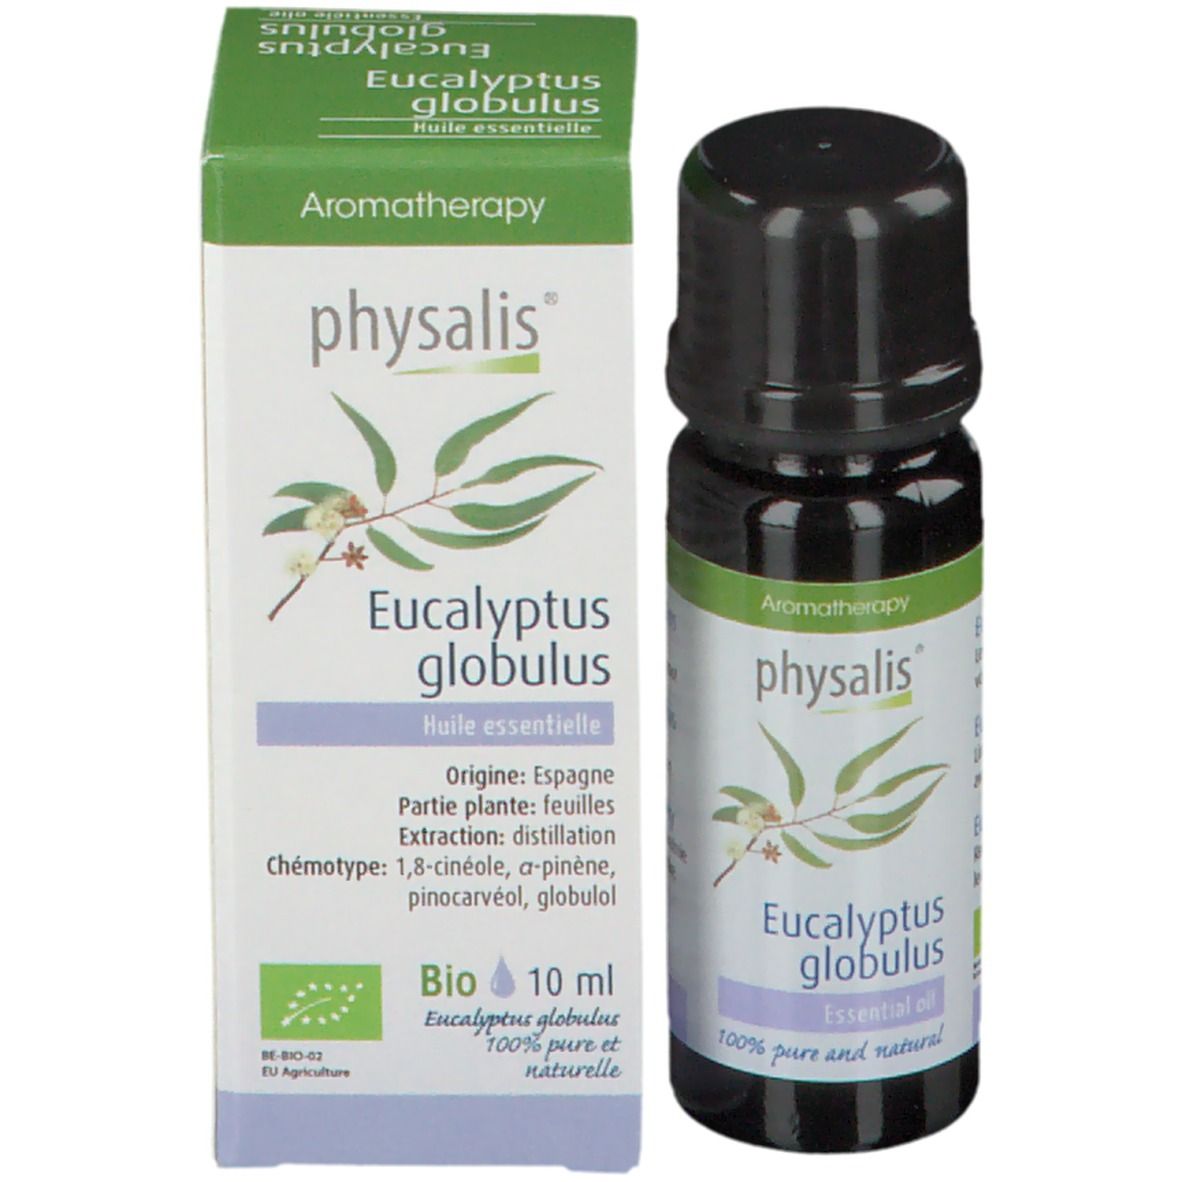 physalis® Eucalyptus Globulus Huile essentielle Bio